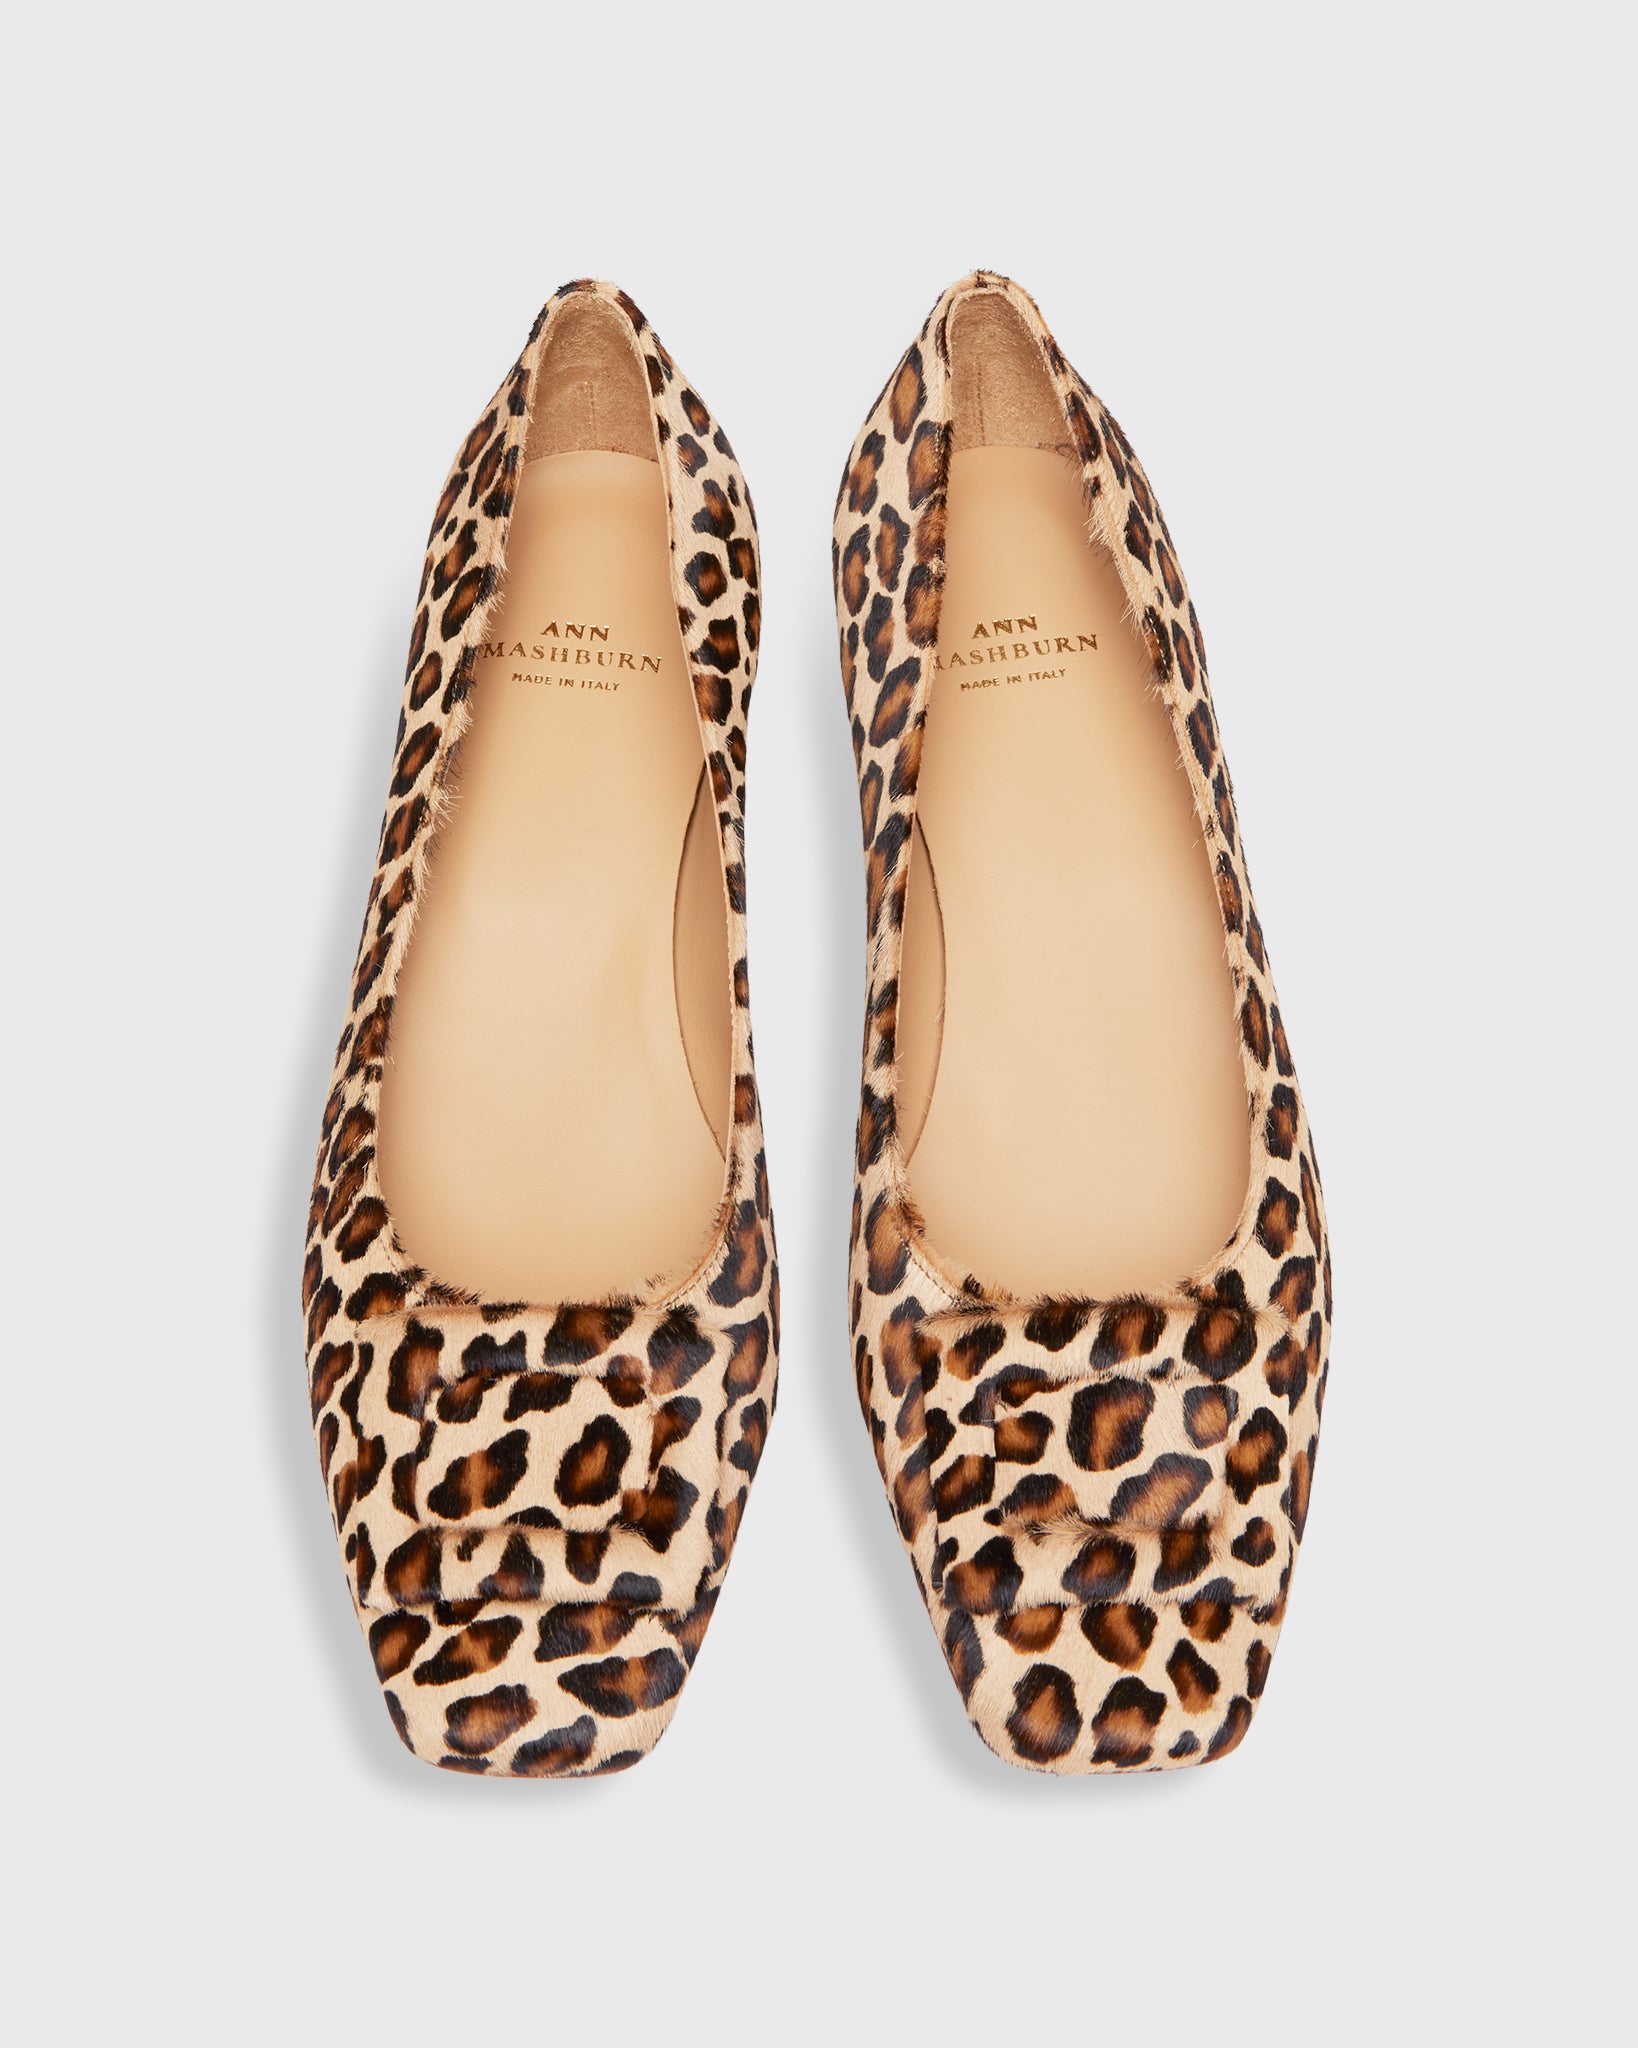 Buckle Shoe in Leopard Calf Hair | Shop Ann Mashburn